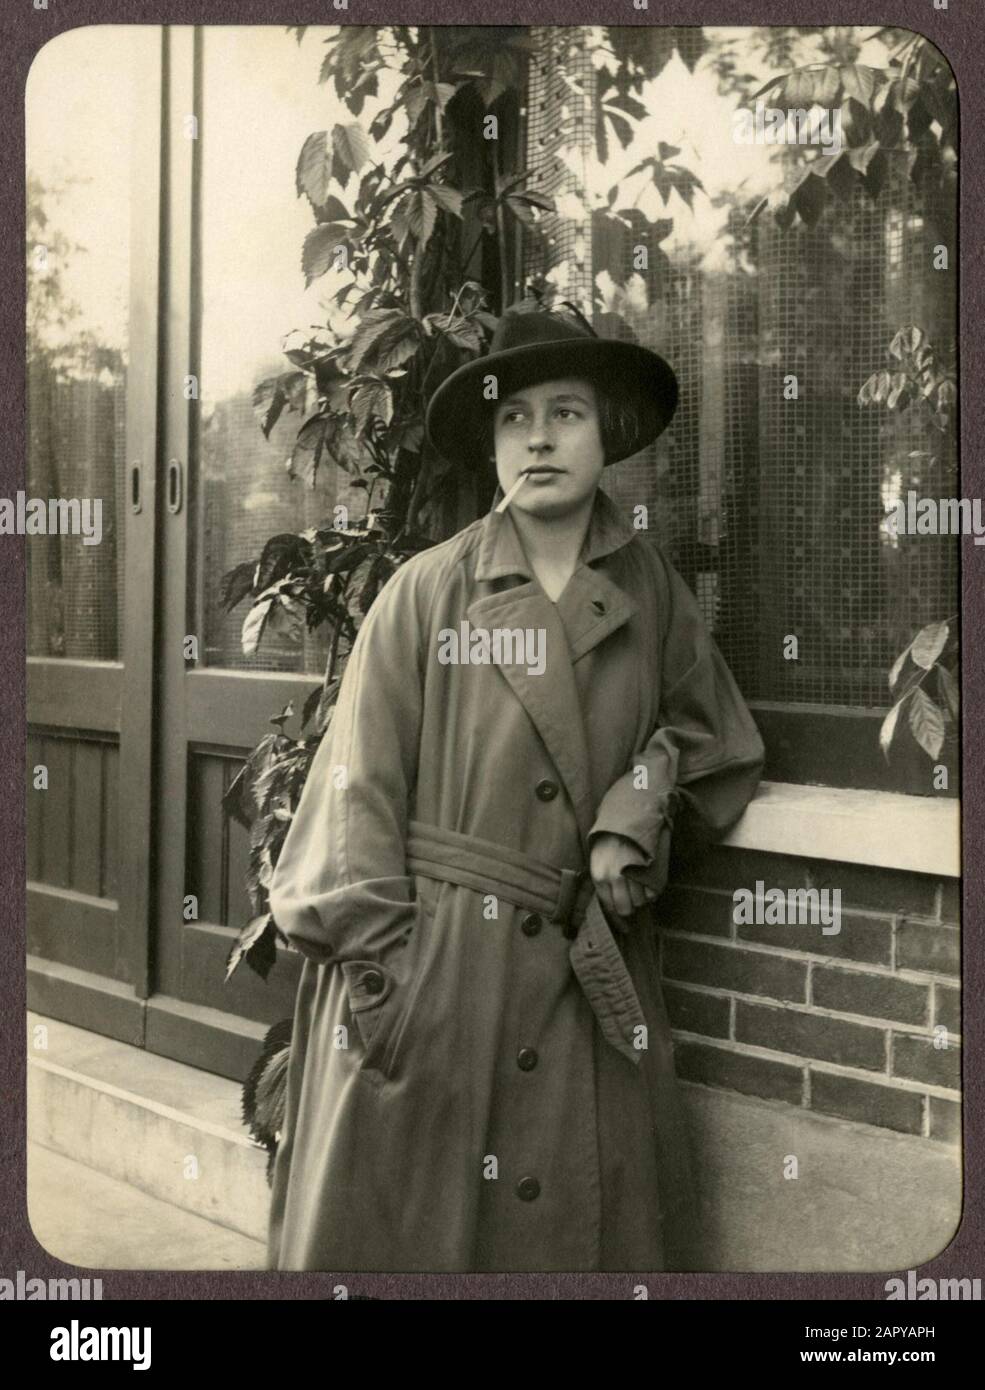 Femme en long imperméable avec chapeau et cigarette dans la bouche, penchée contre une fenêtre. Pays-Bas, 1926. Cette photo fait partie d'un certain nombre de photos numérisées en basse résolution d'un toalbum privé. Banque D'Images